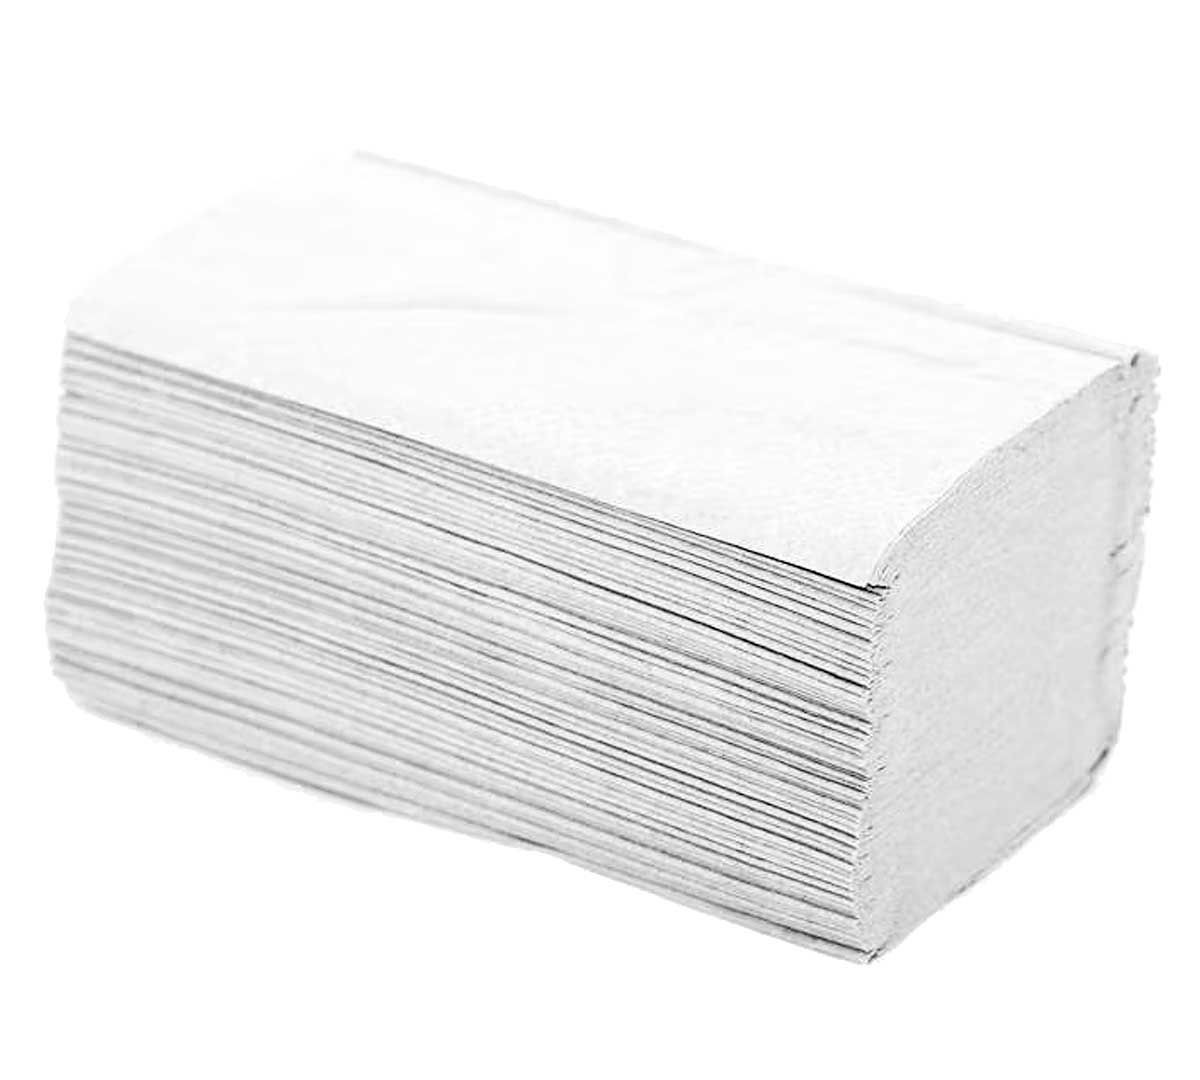 Pañuelos de papel desechables para hoteles - Pack 200 unidades